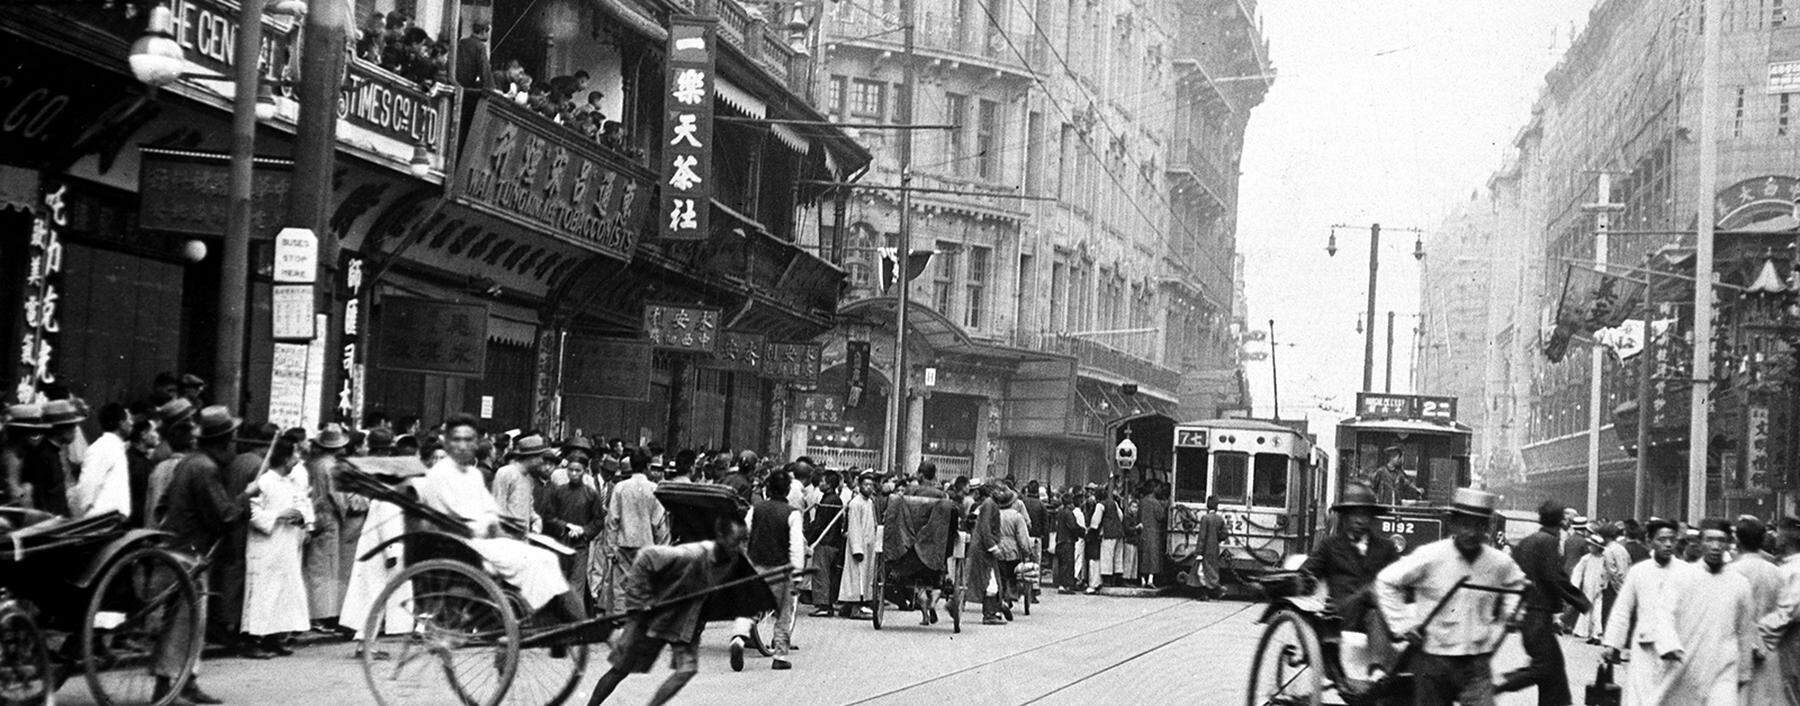 Die 1920er-Jahre markierten in China eine Wende: Politik kam in der Mitte der Gesellschaft an. In Shanghai formierte sich die KP. 